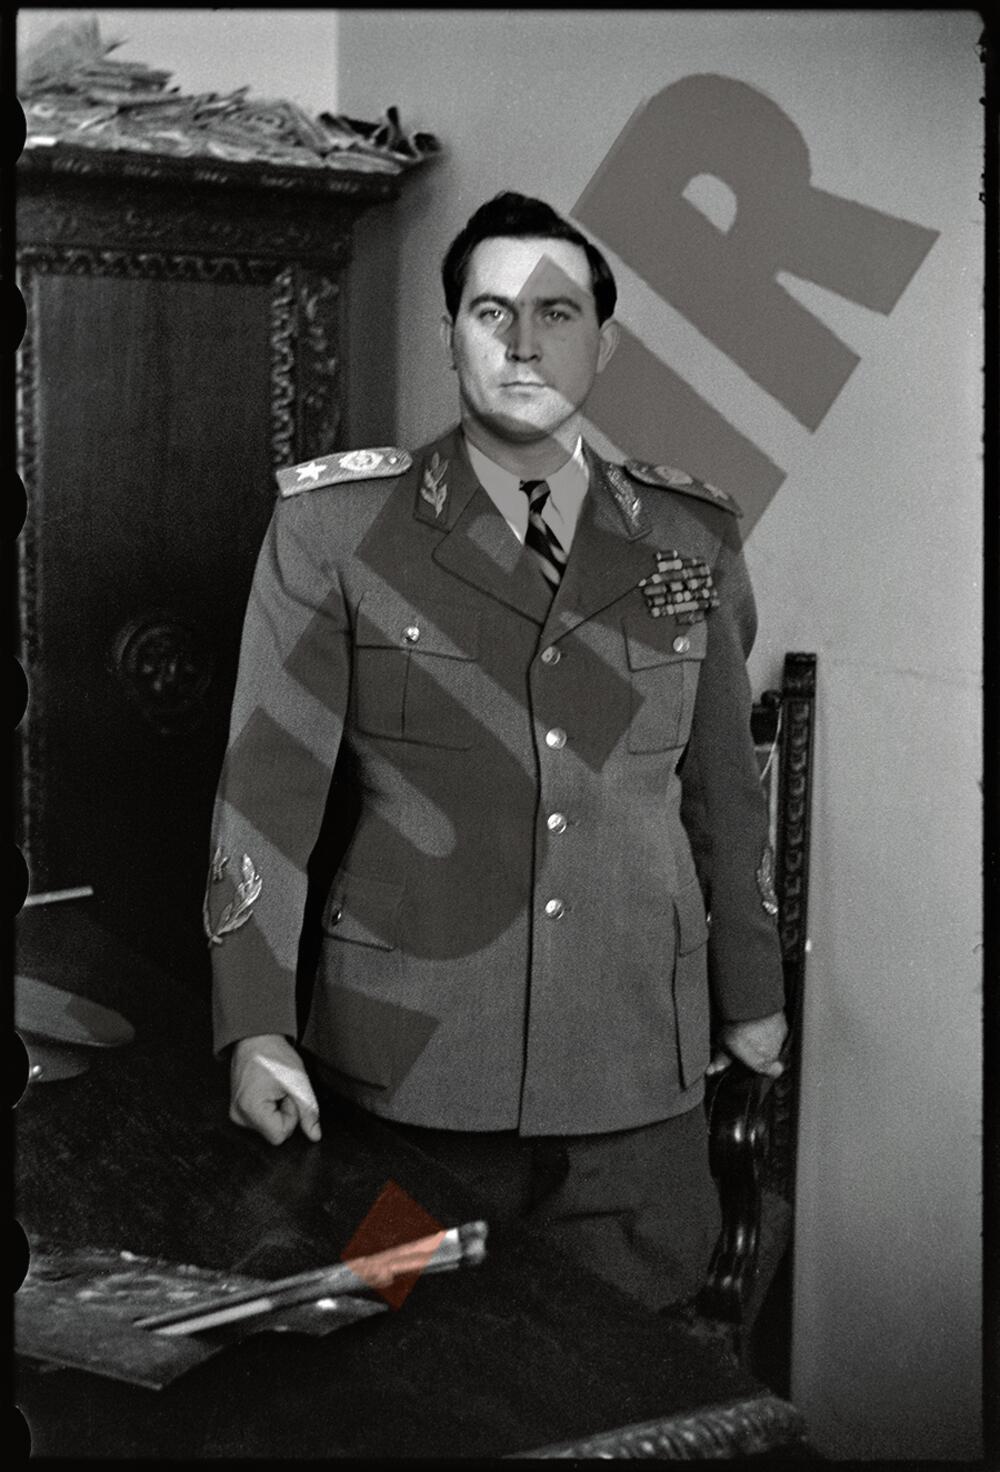 Jospi Broz Tito